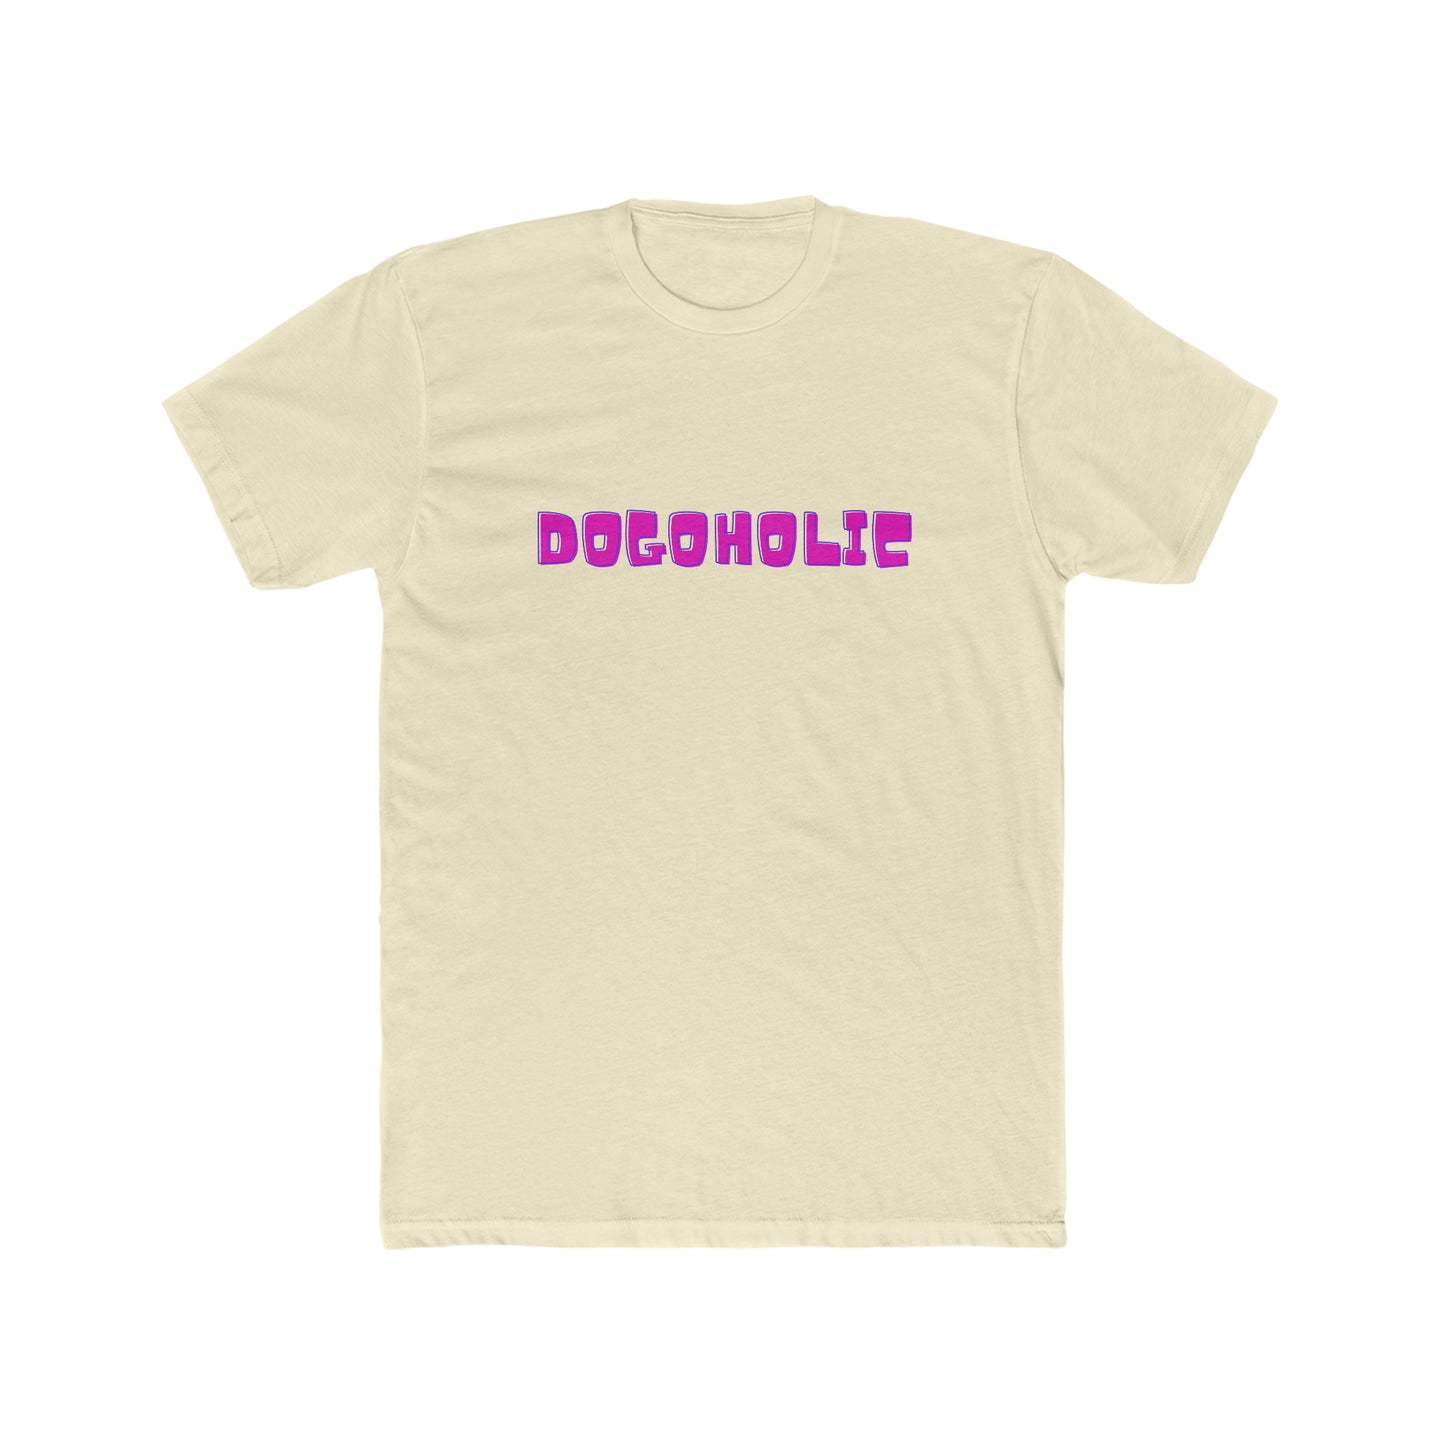 "Dogoholic" T-Shirt